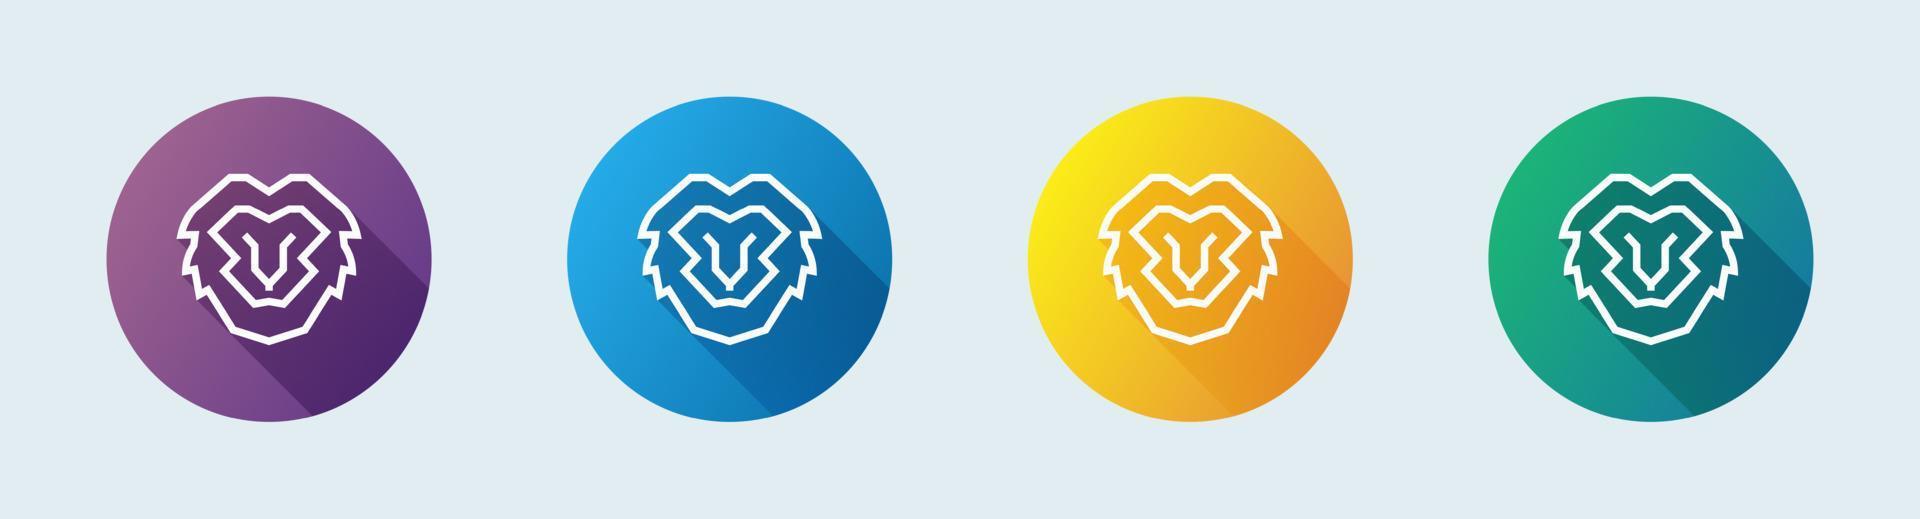 Löwenliniensymbol im flachen Designstil. Tiere Zeichen Vektor-Illustration. vektor